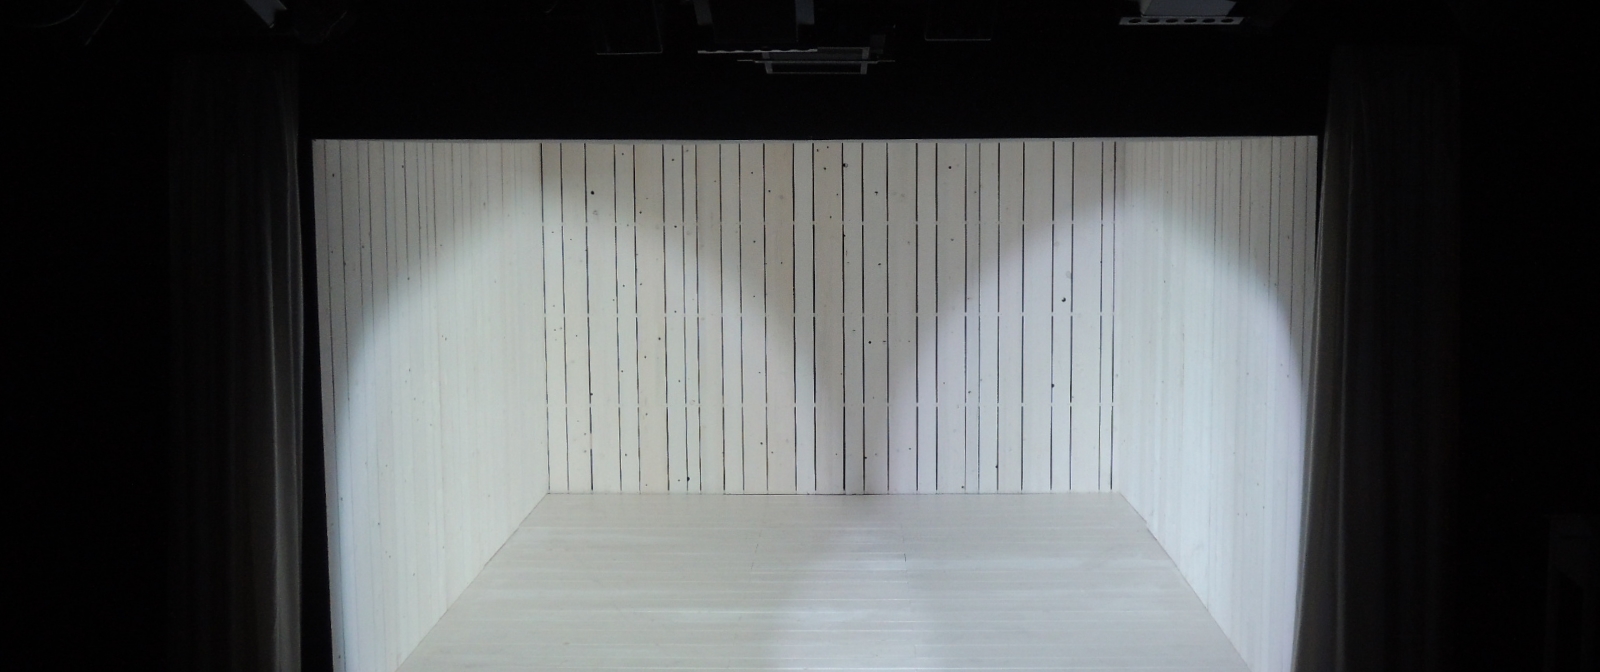 Auf einer Bühne steht eine nach vorne geöffnete Box, die mit weißen Holzpaneelen ausgekleidet ist. 